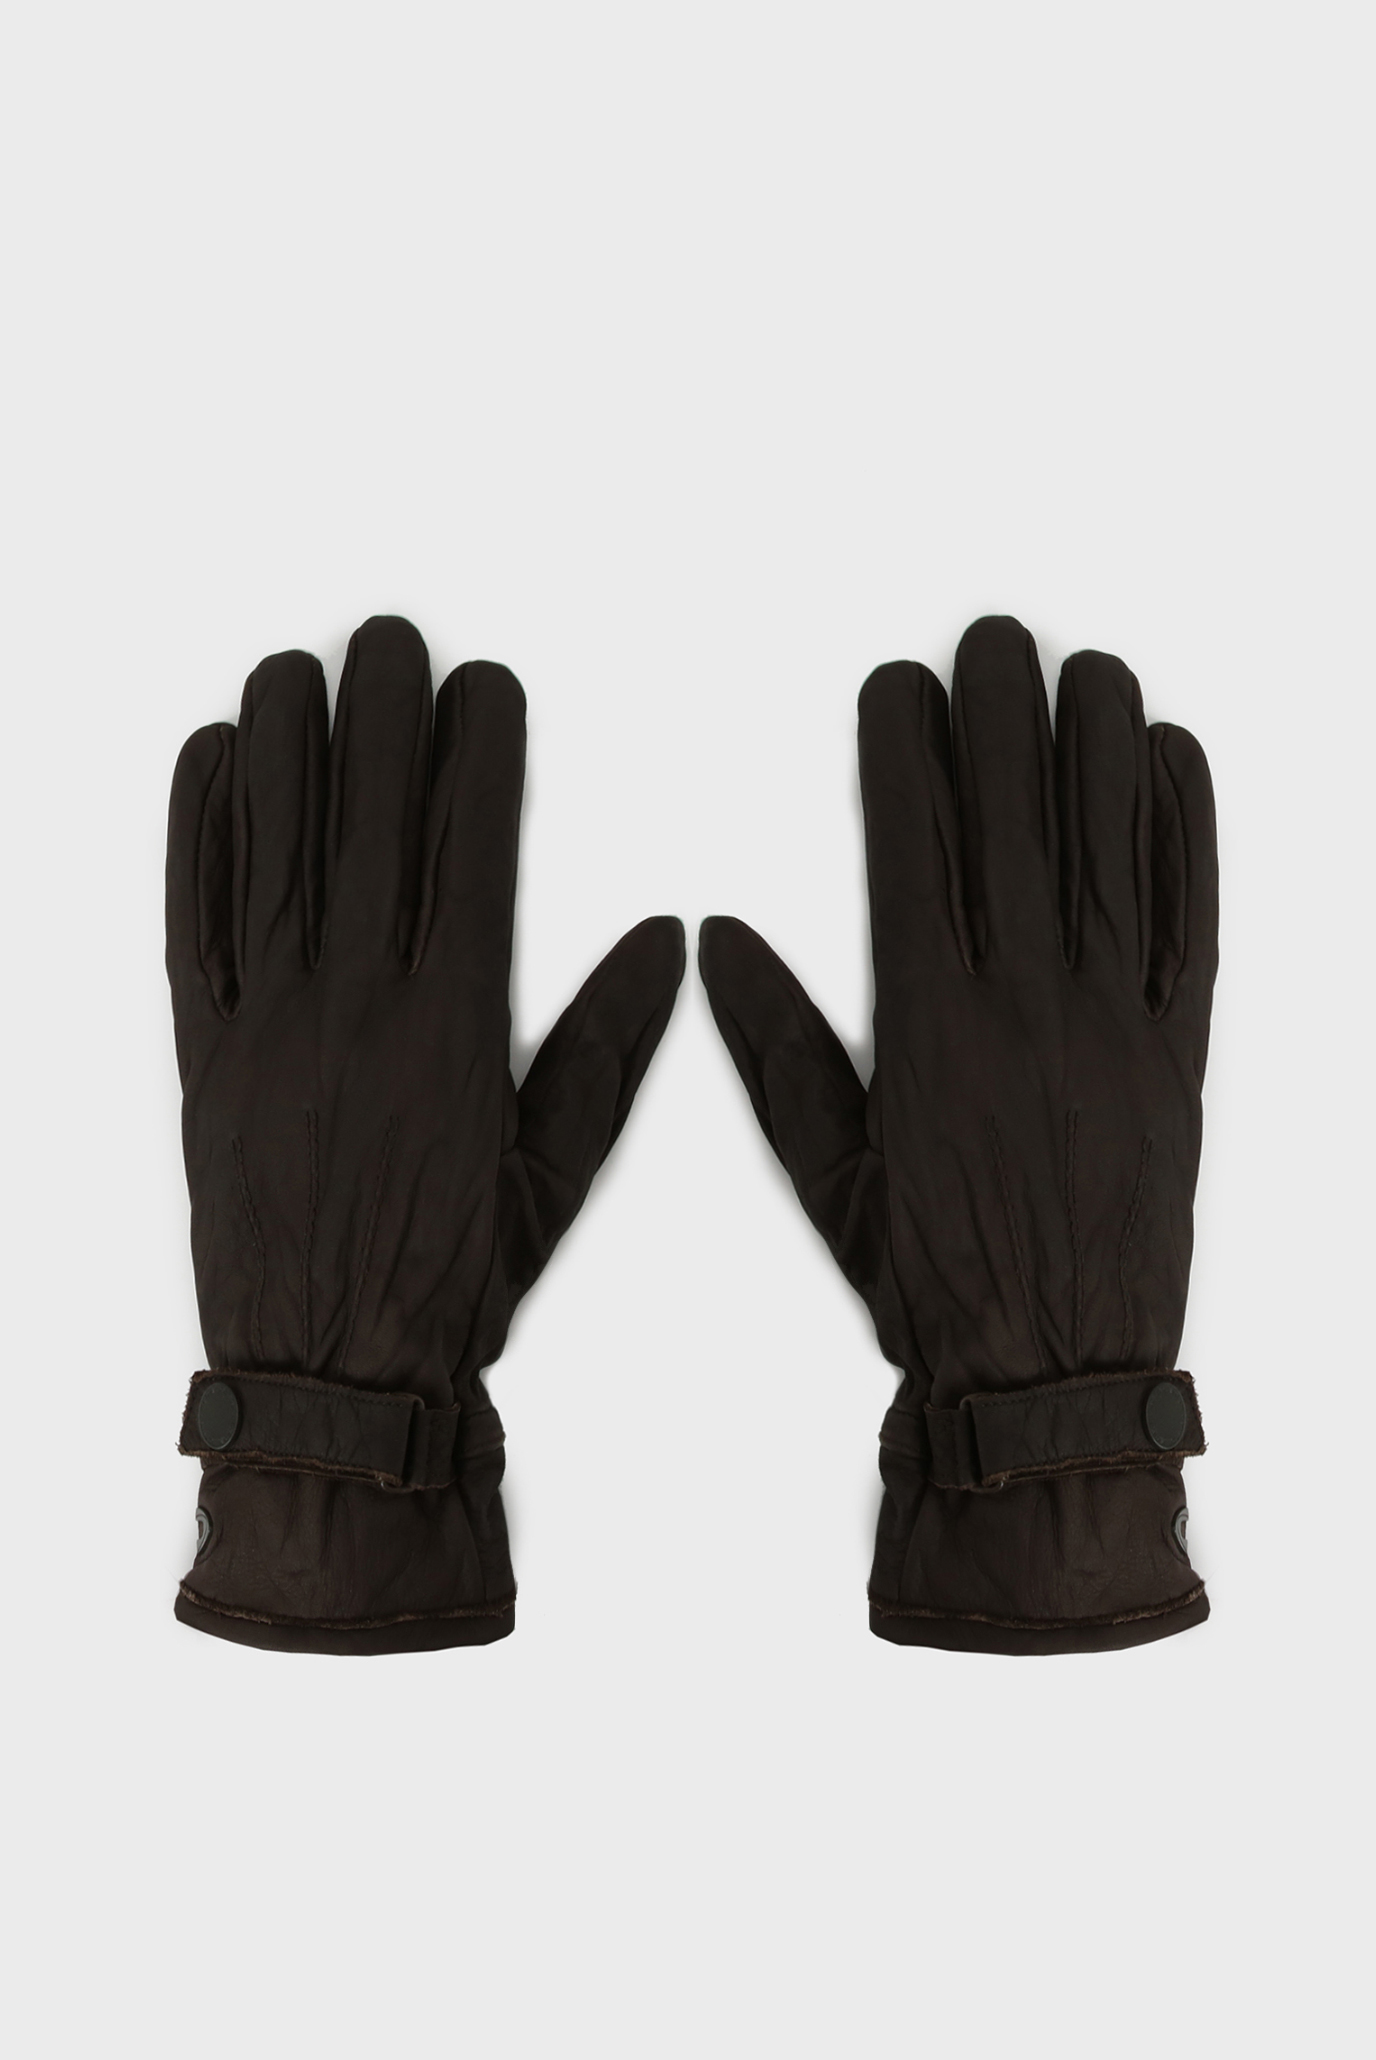 Чоловічі темно-коричневі шкіряні рукавички 1